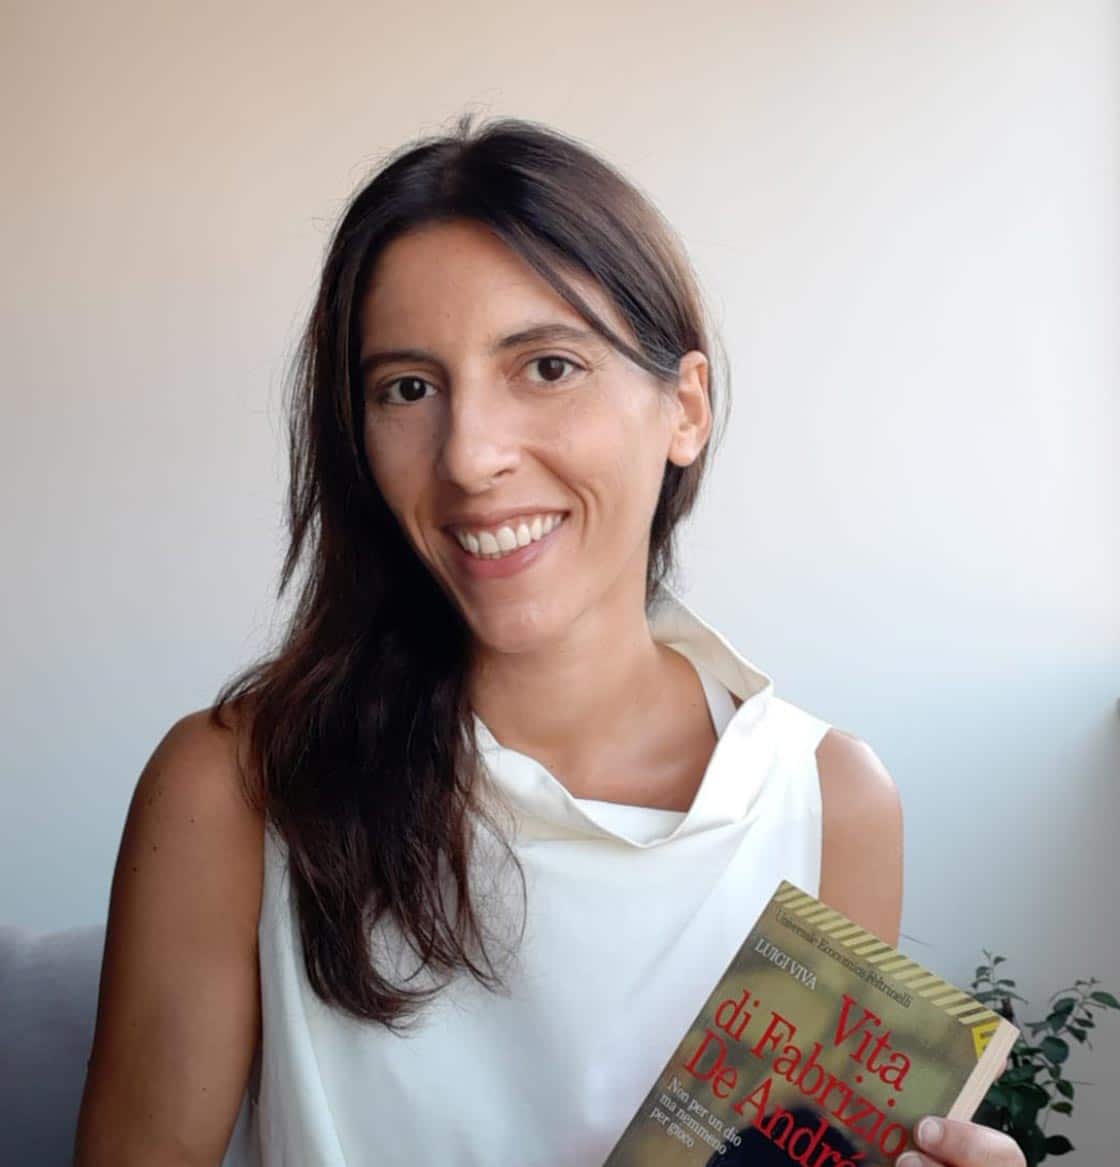 Valentina profesora de los curso de italiano de Come mai con un libro en las manos